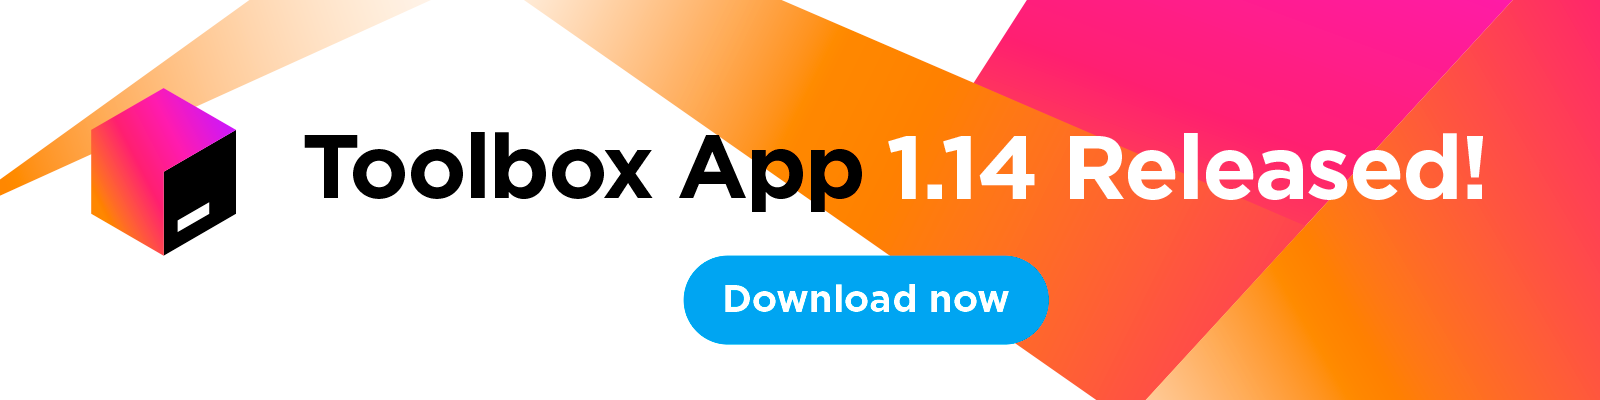 Toolbox App 1.14 Released